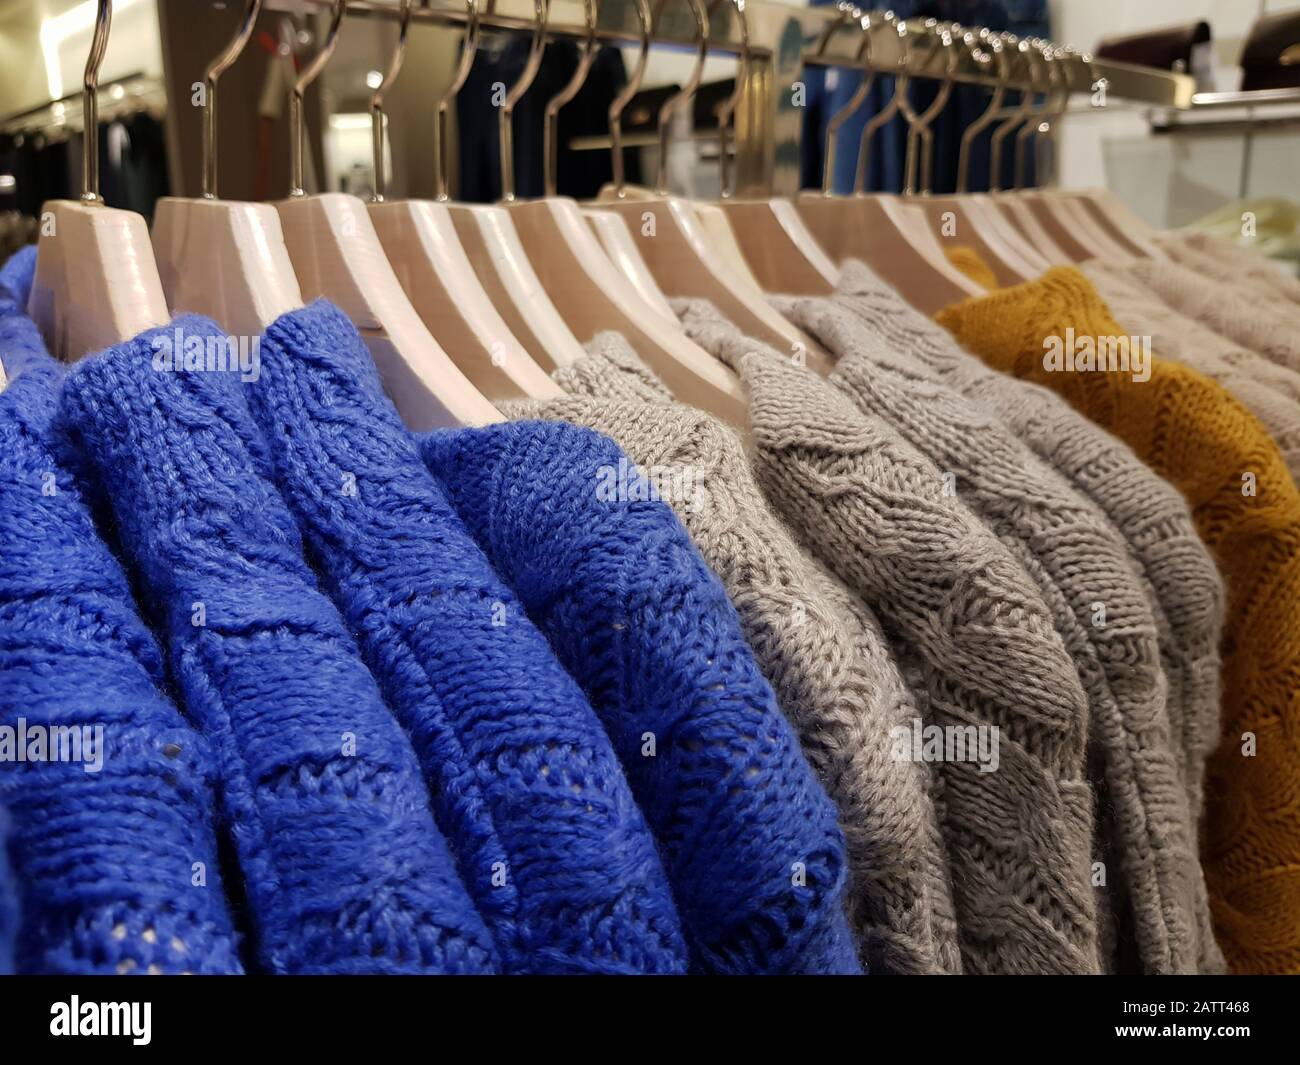 Wollpullover hängen an Bügeln in einem Bekleidungsgeschäft Stockfotografie  - Alamy